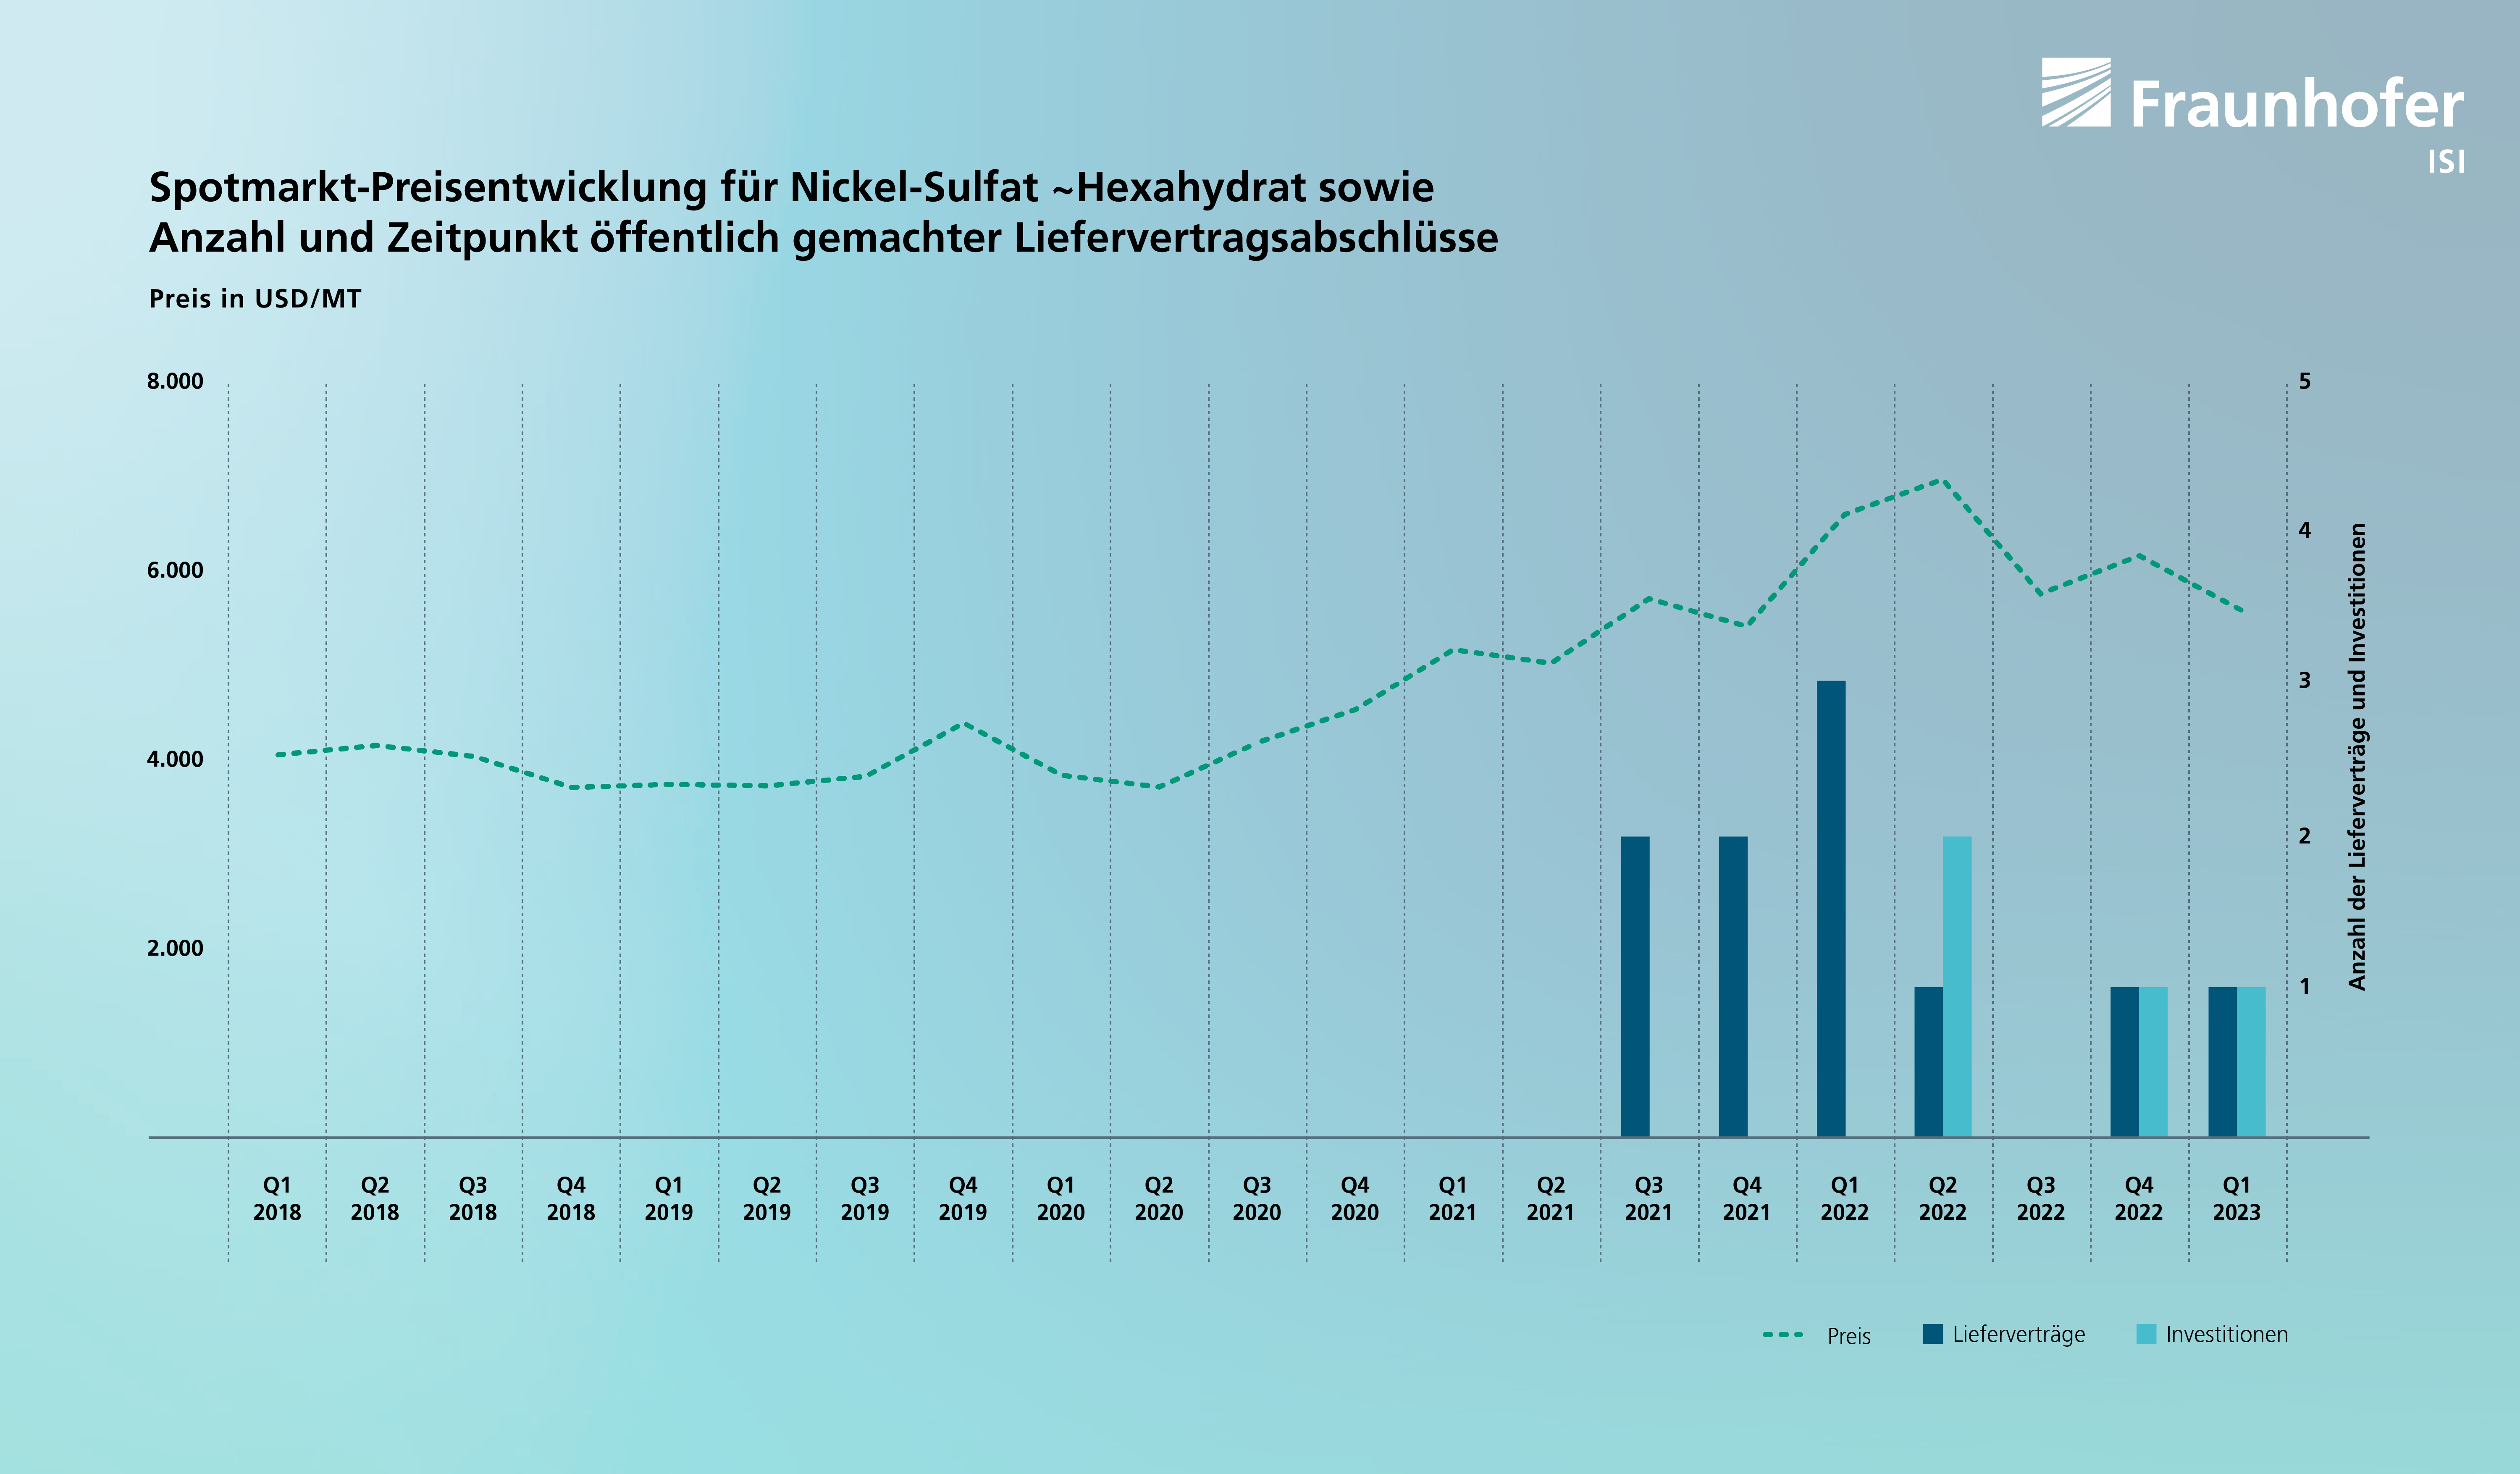 Spotmarkt-Preisentwicklung für Nickel-sulphat~hexahydrat sowie Anzahl und Zeitpunkt öffentlich gemachter Liefervertragsabschlüsse